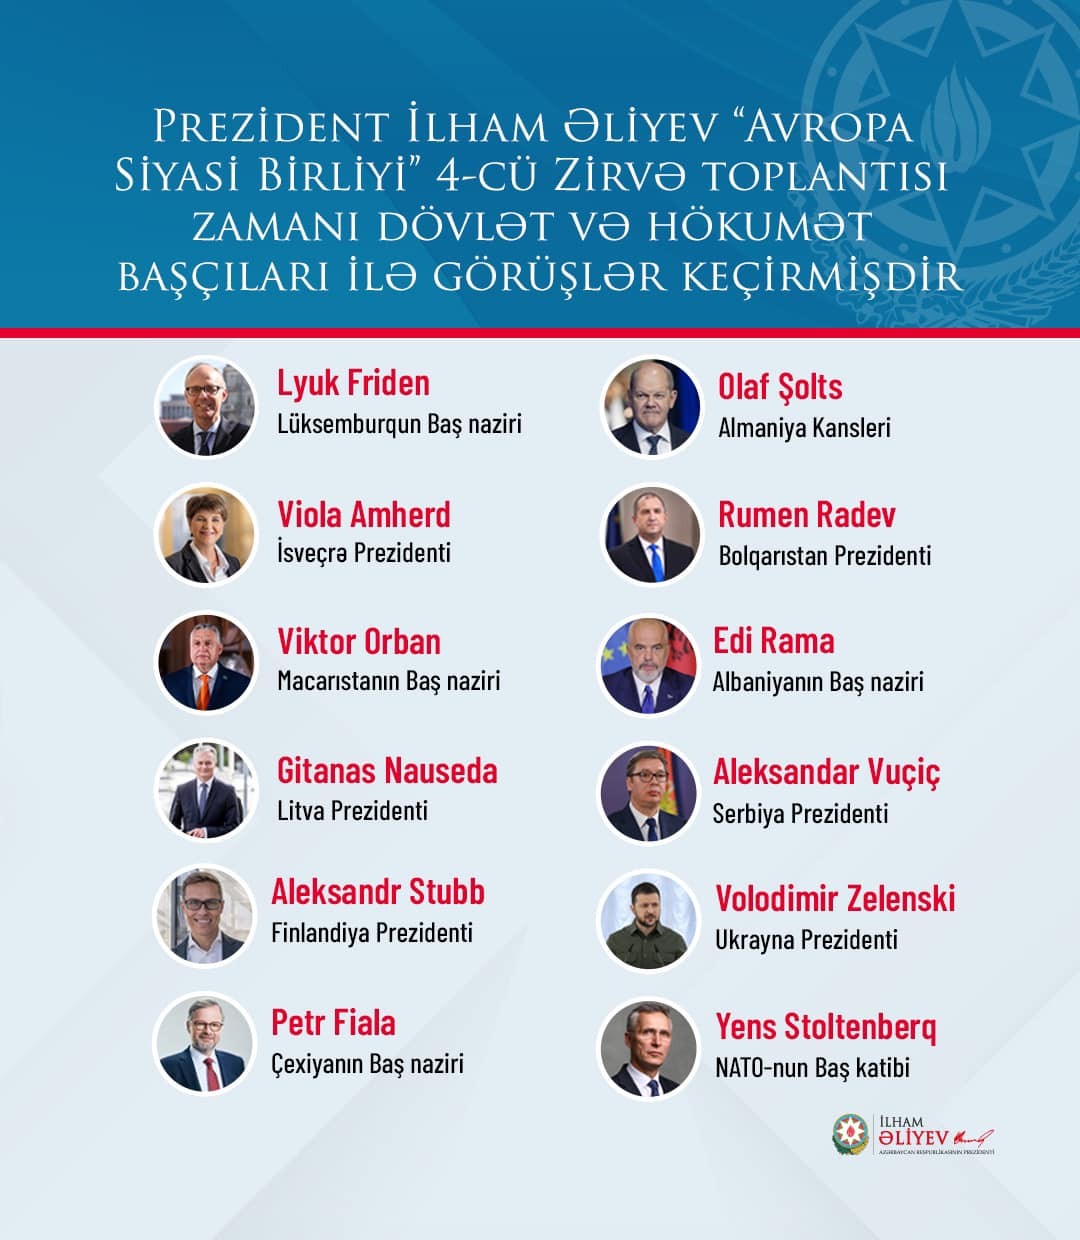 İlham Əliyev 12 ölkə və təşkilat lideri ilə görüşüb - FOTO